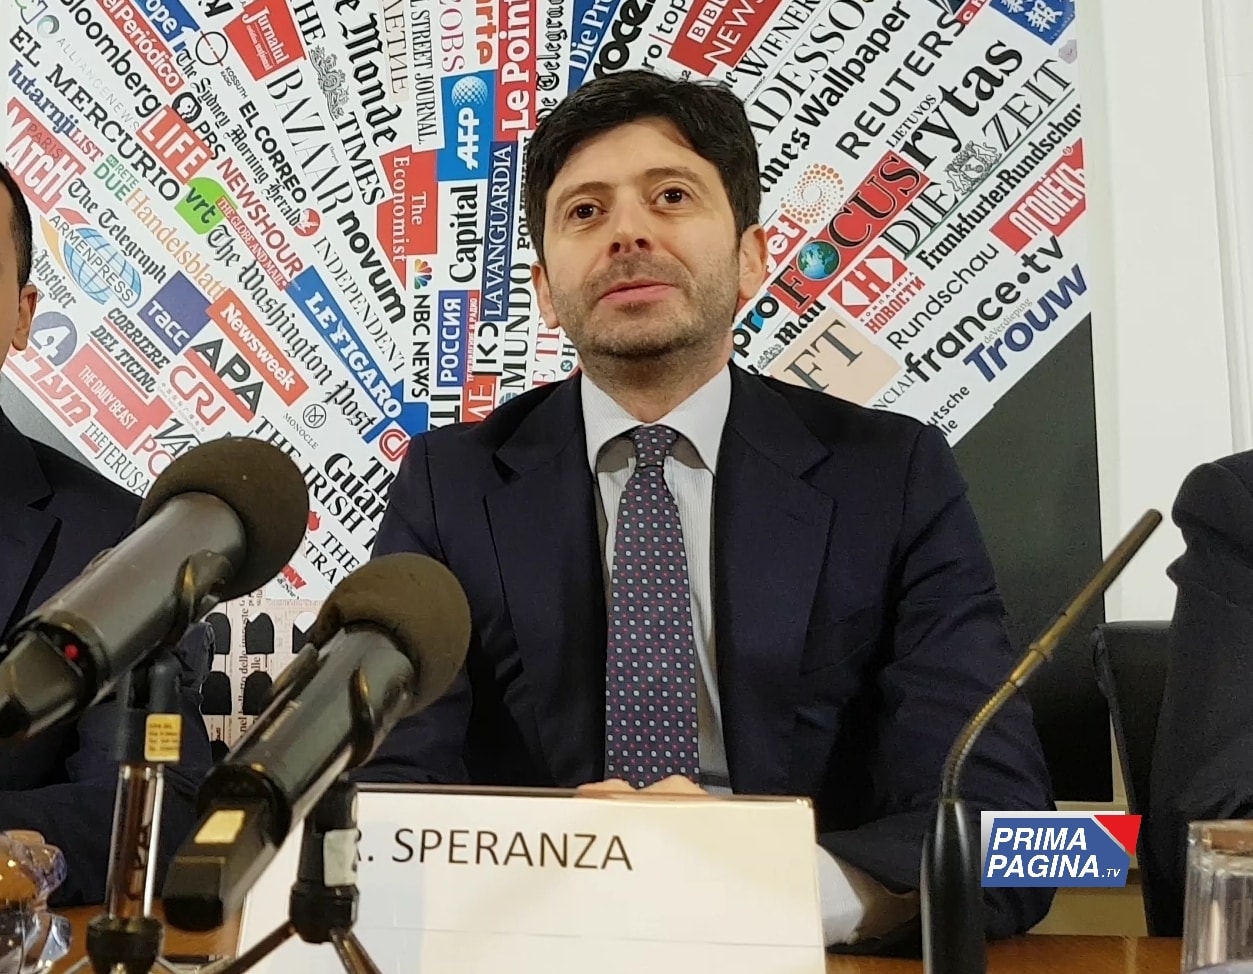 VACCINO Il ministro Speranza: “L’obiettivo è vaccinare entro l’estate tutti gli italiani che lo vorranno”